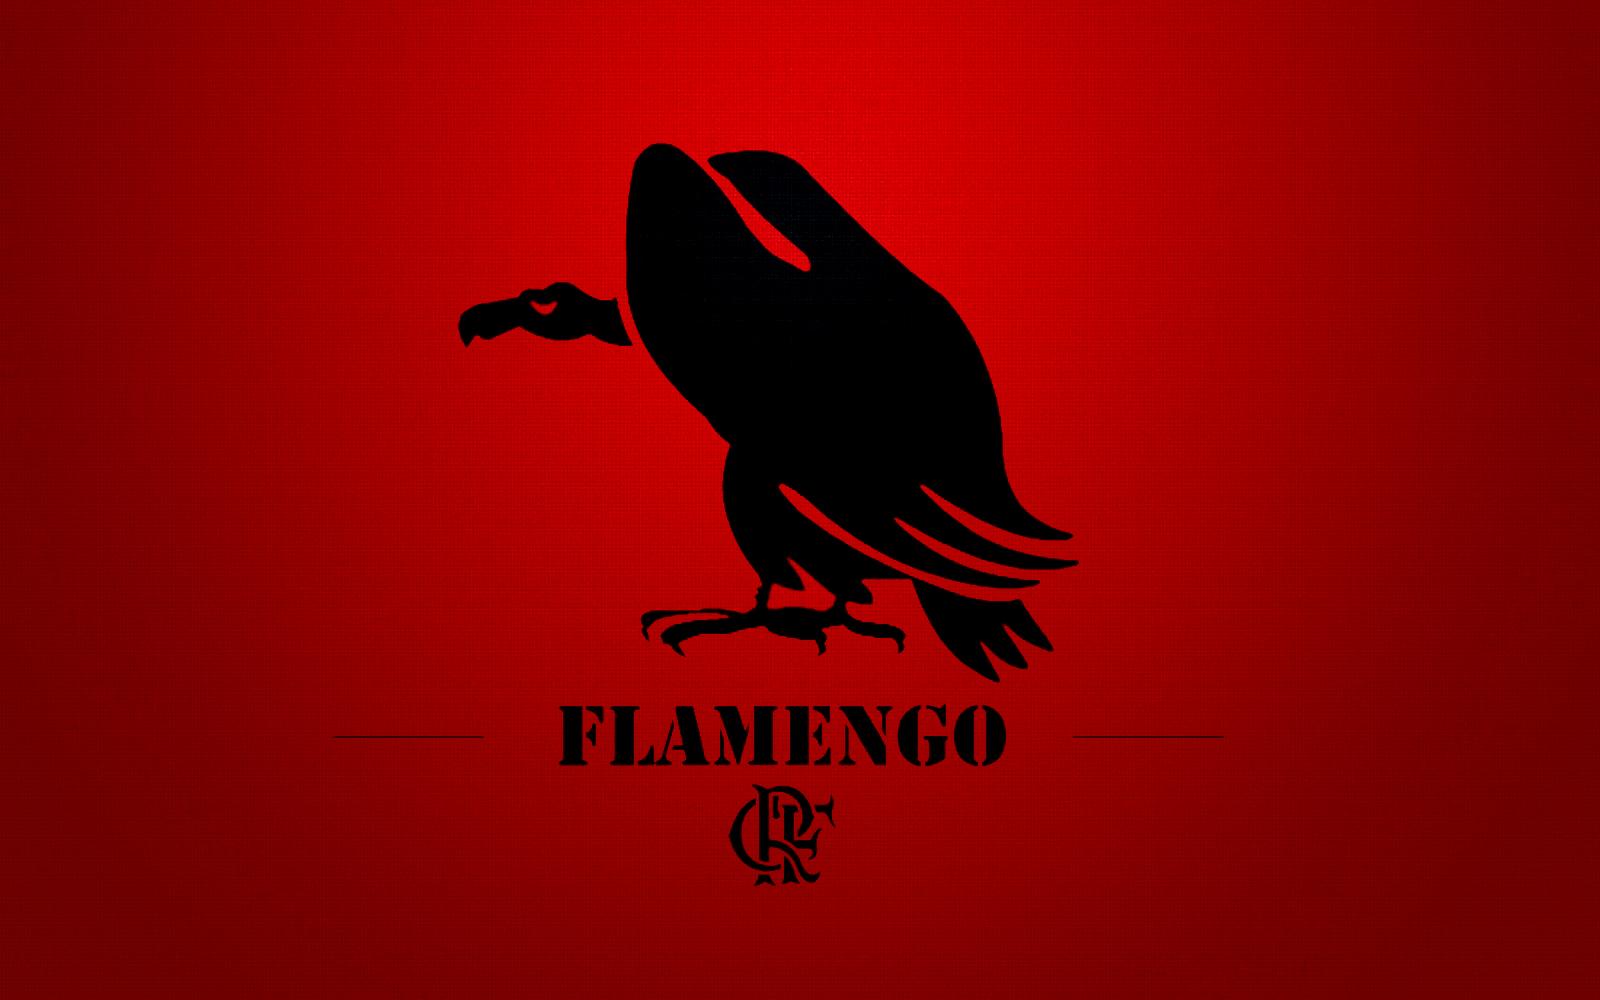 Clube De Regatas Do Flamengo at 2048 x 2048 iPad size wallpapers HD quality